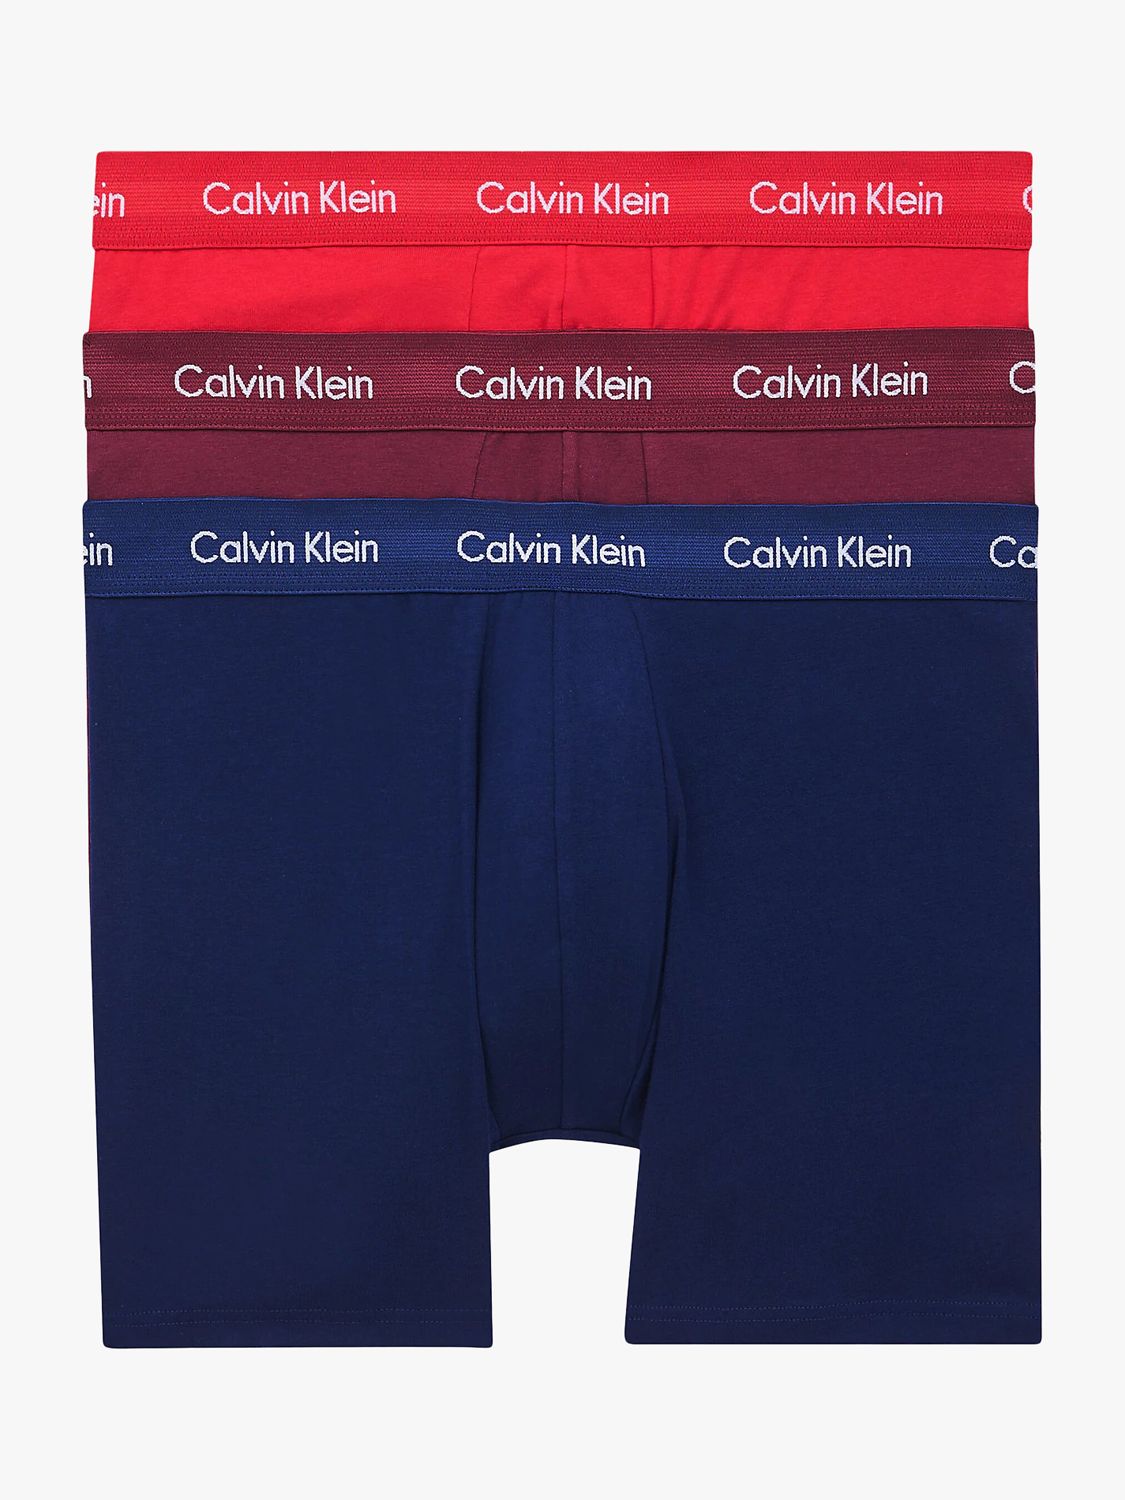 Calvin Klein Regular Trunks, Pack of 3, New Navy/Lush Burgundy/Red Gala